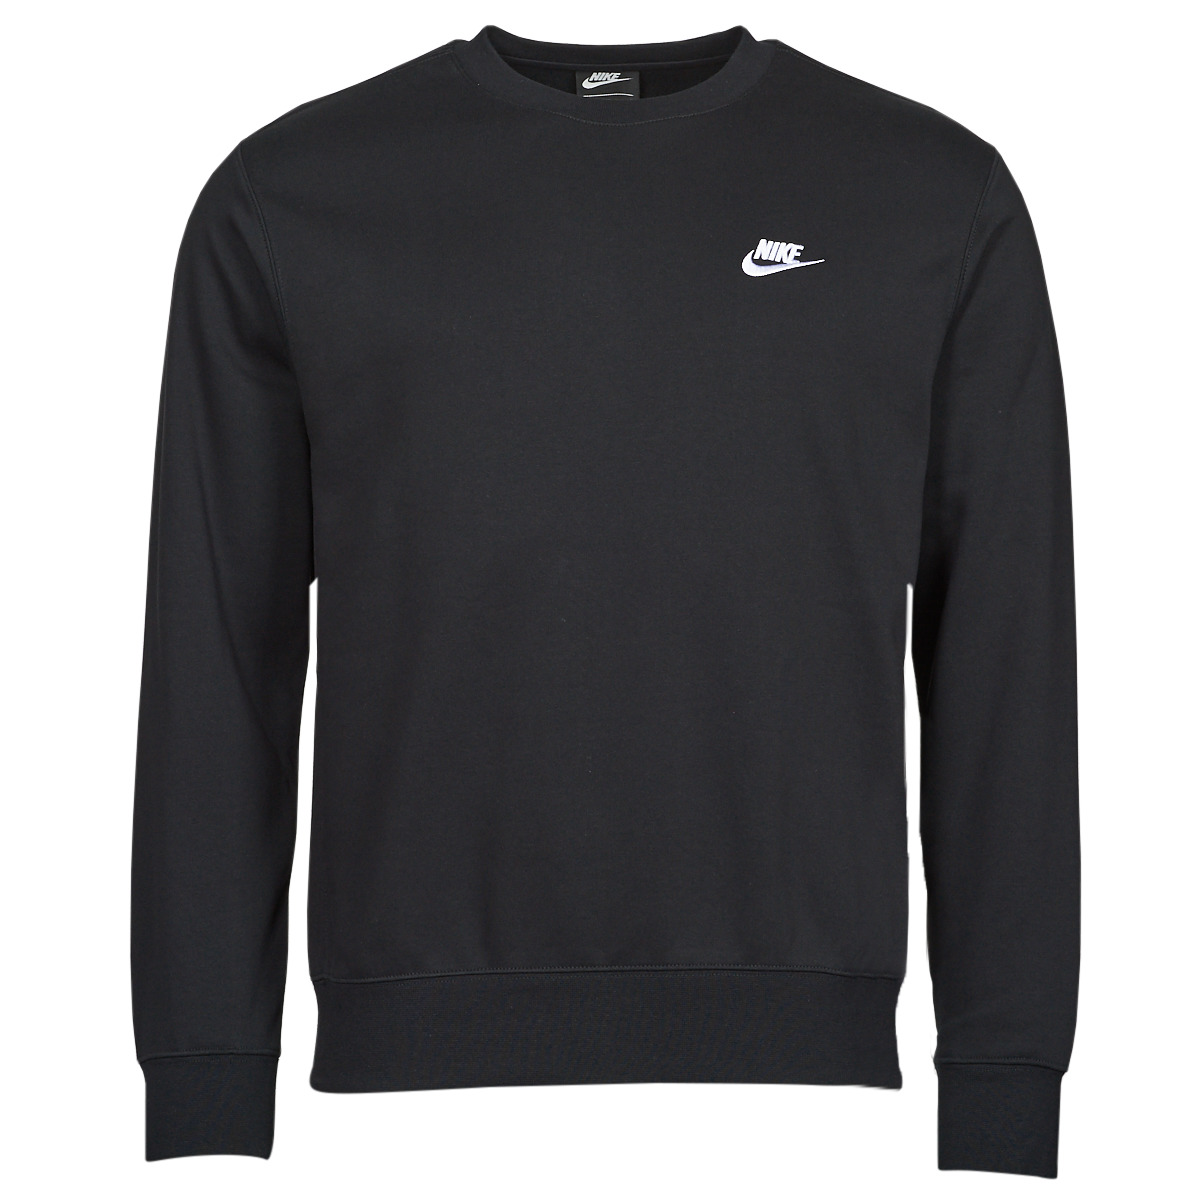 Nike - NSW Club Fleece Crew - Zwarte Sweater - XL - Zwart